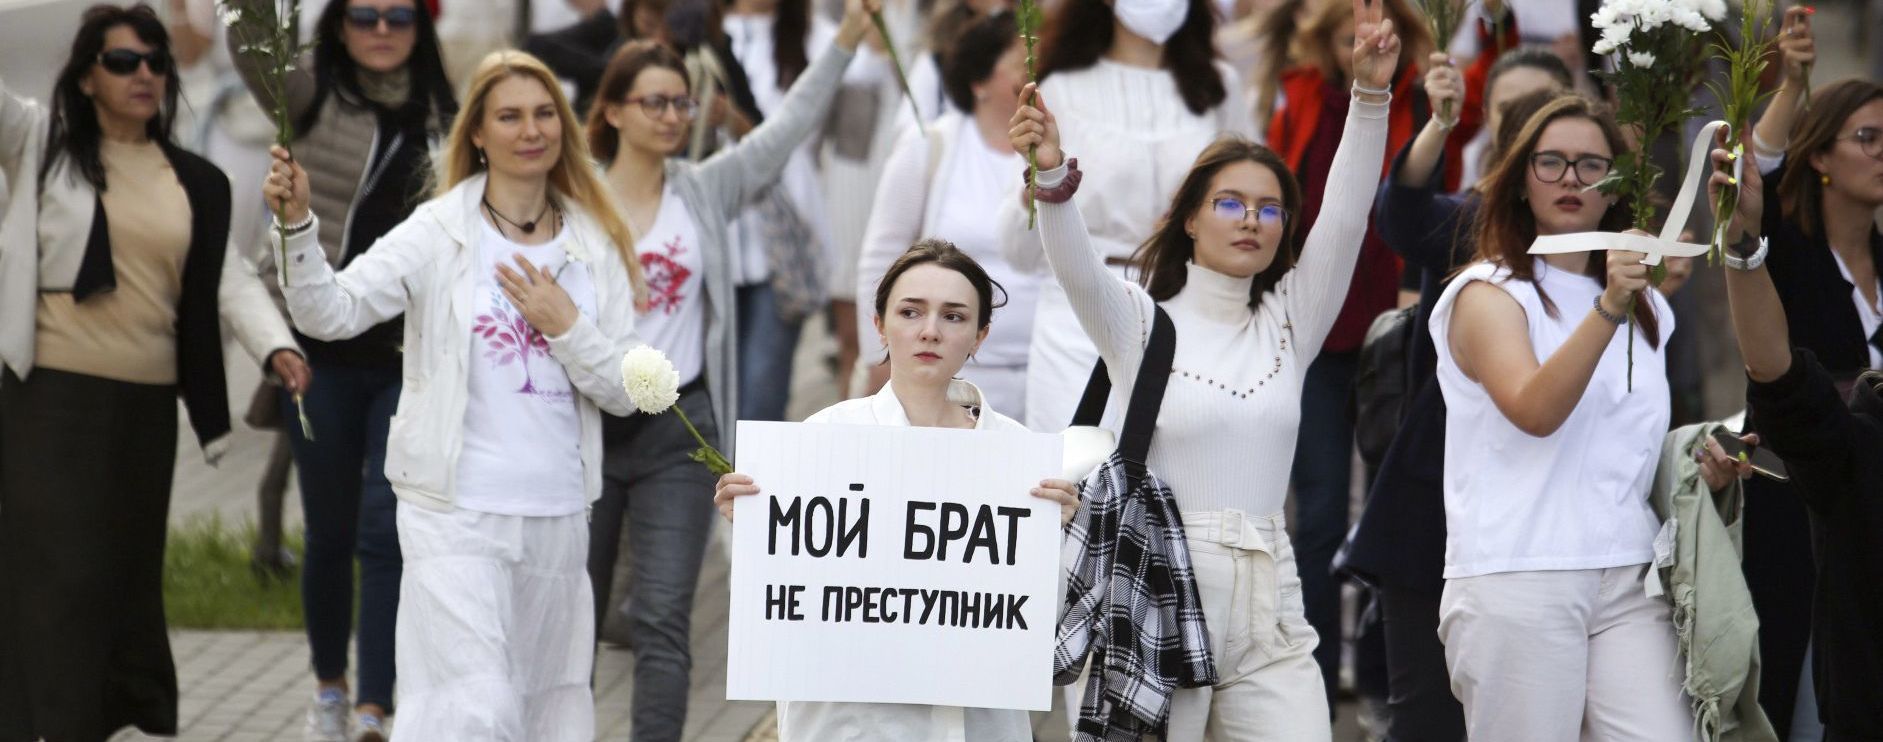 Белорусский МИД обвинил иностранных партнеров в необъективных заявлениях и выводах